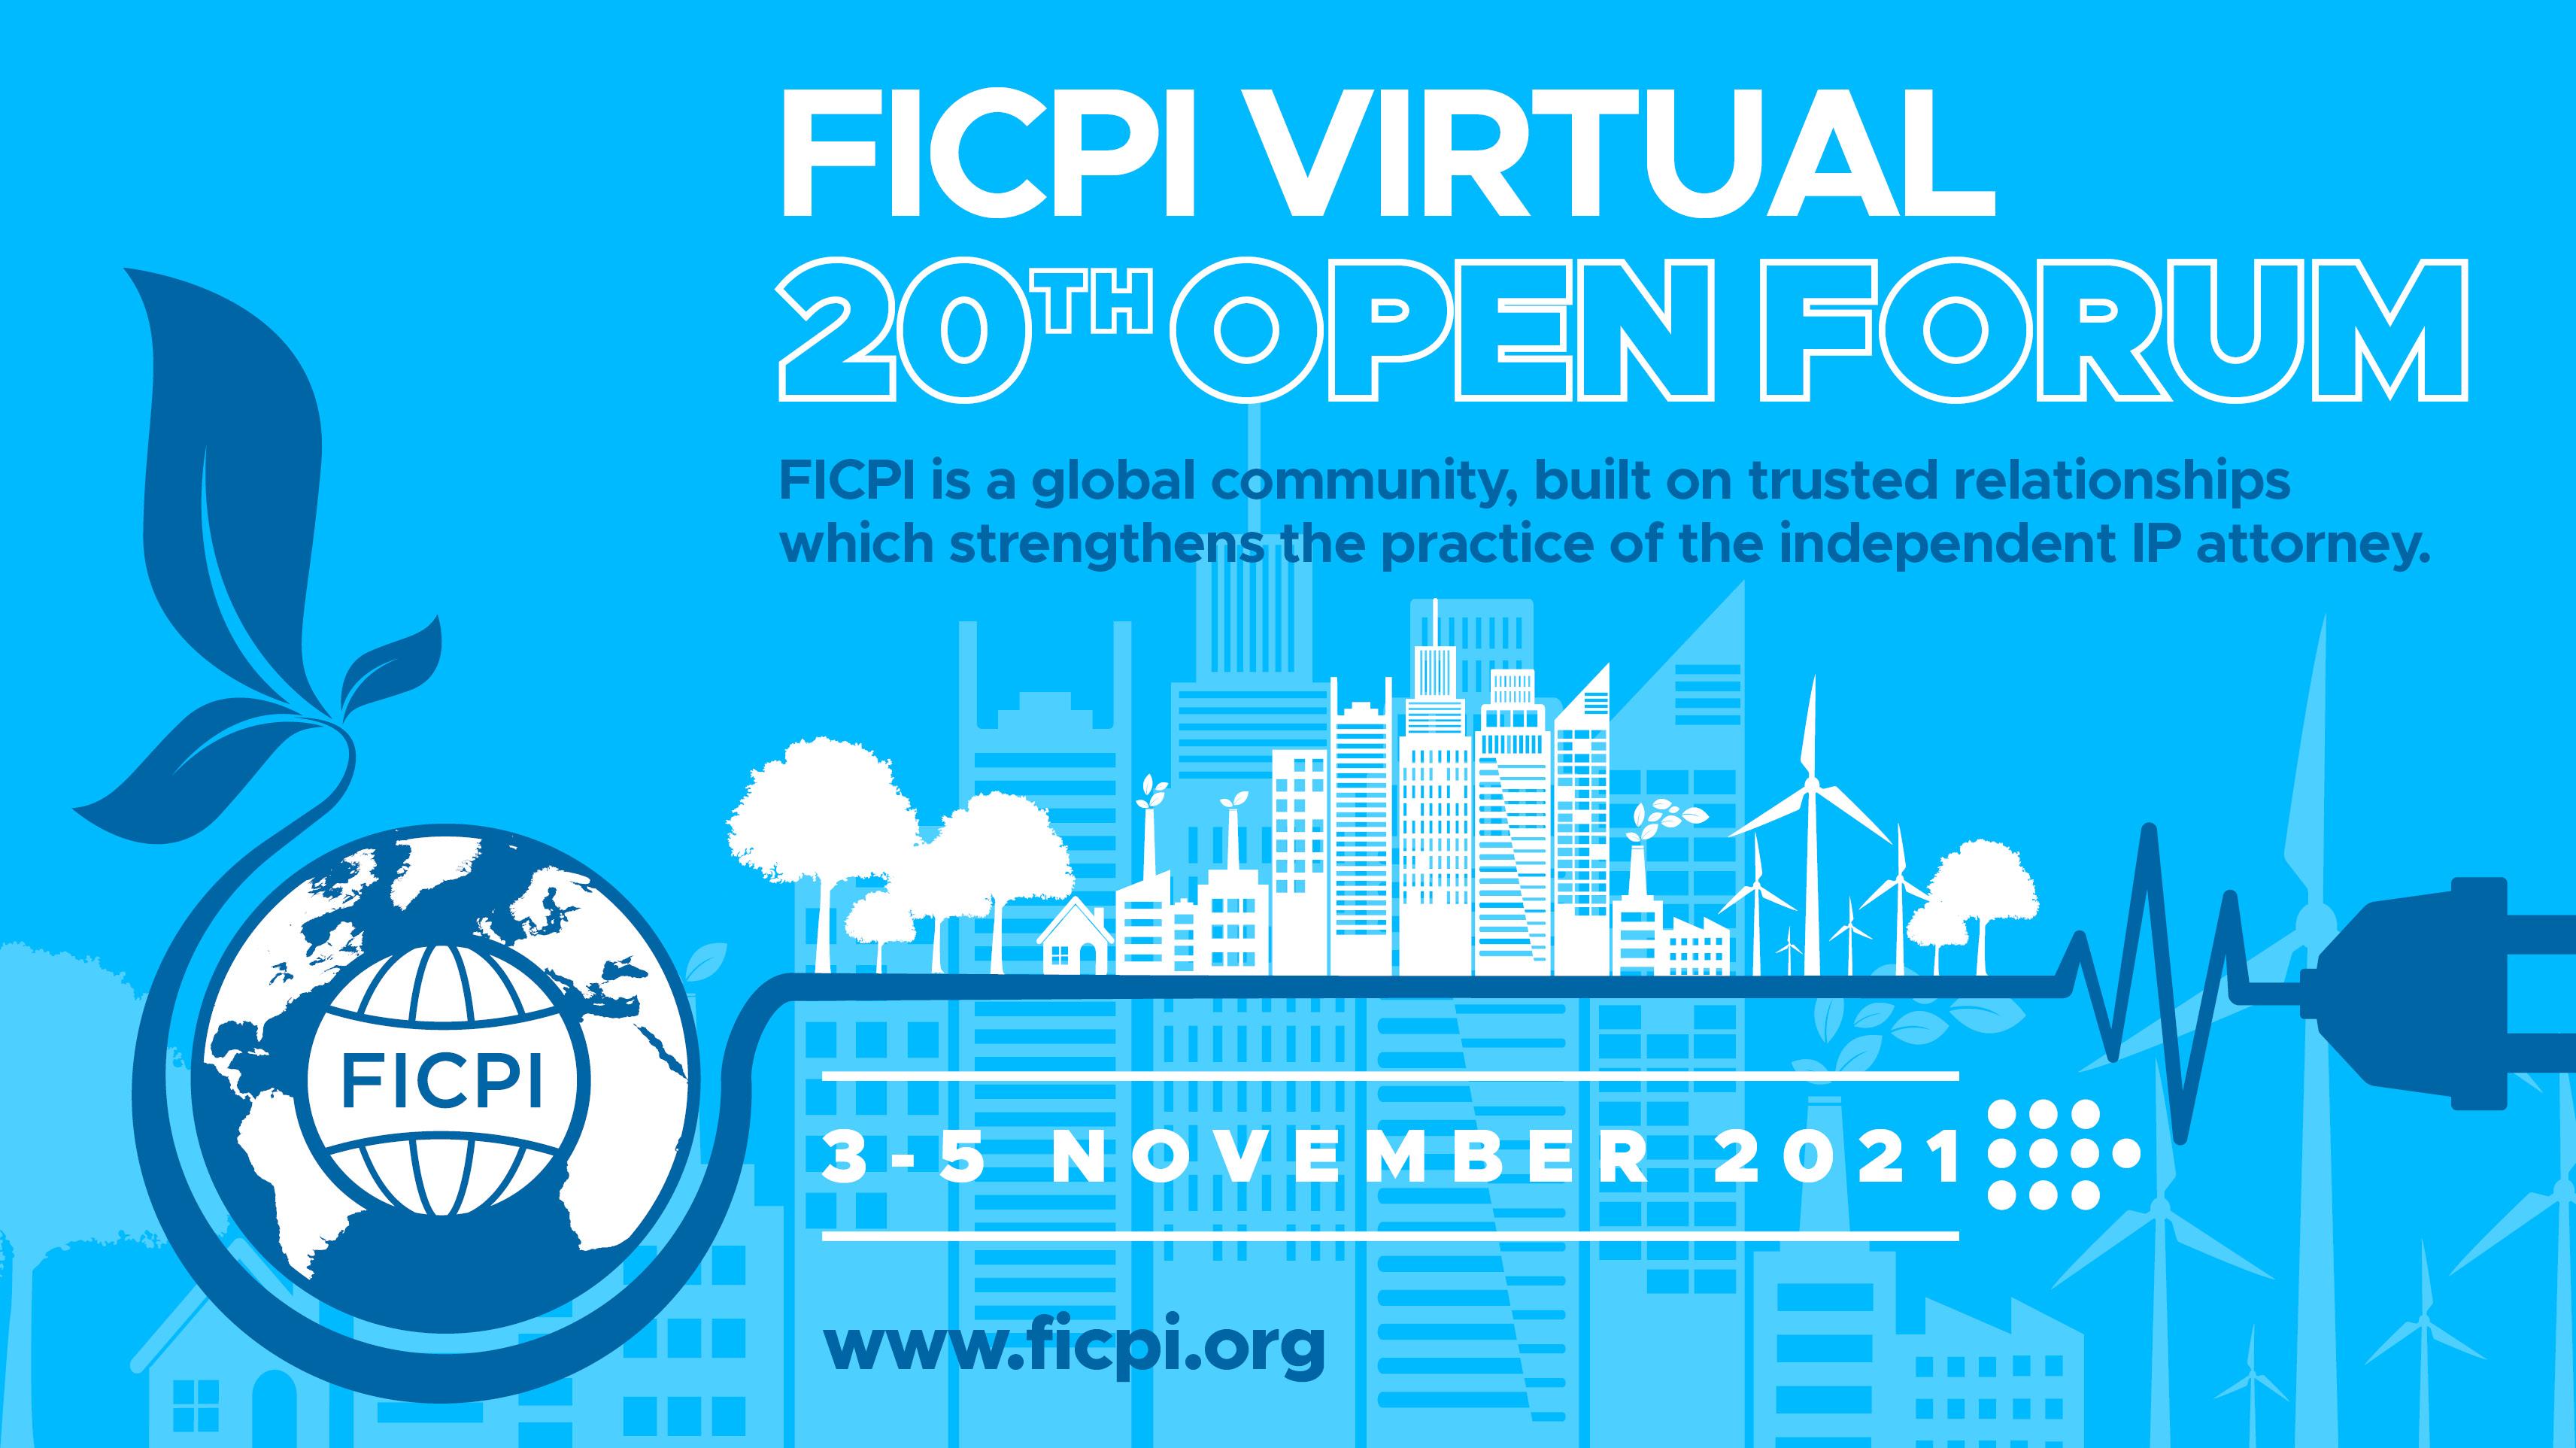 FICPI: 20 Open Forum Image